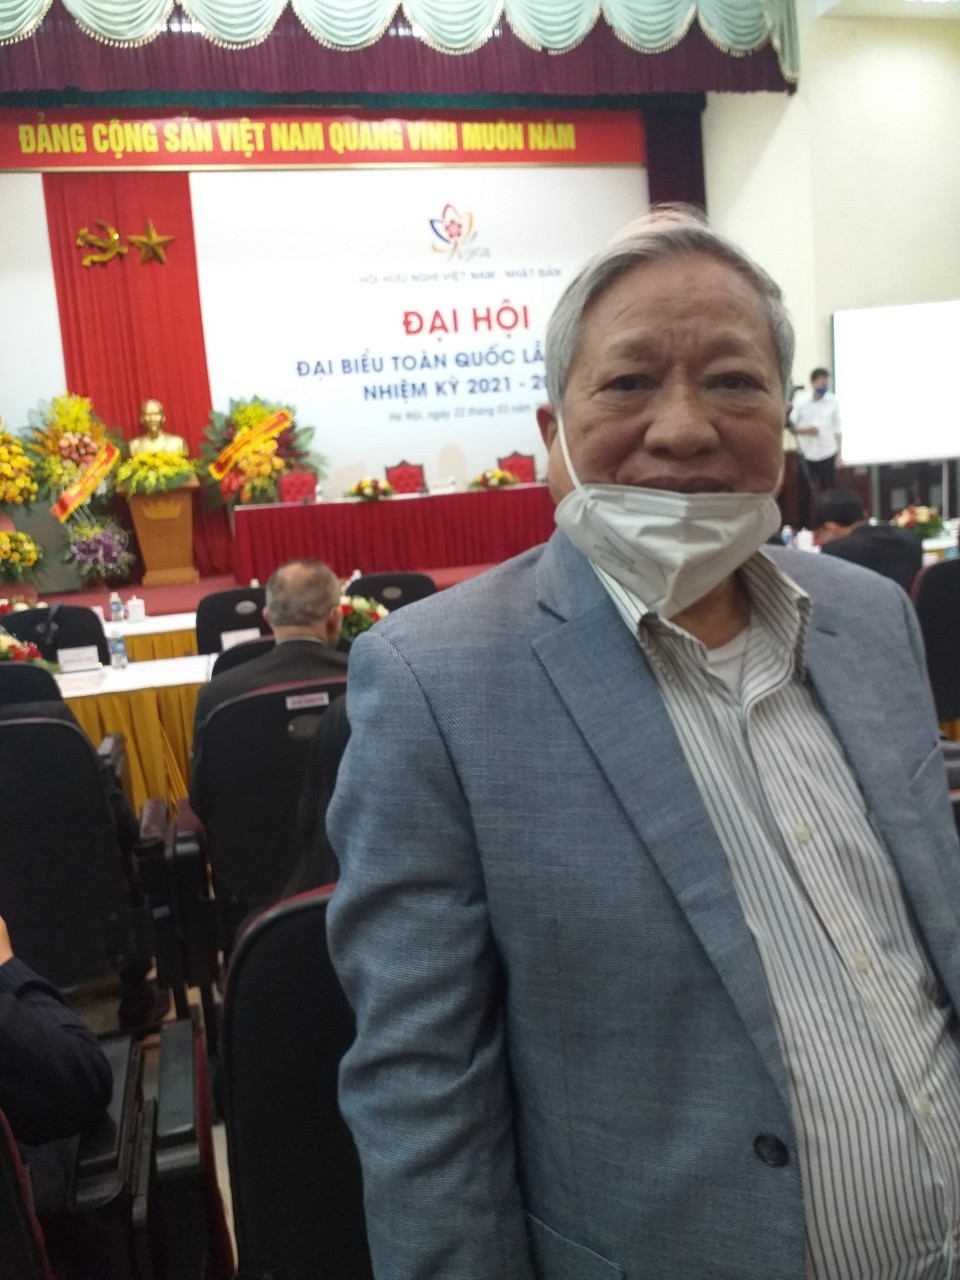 Ông Trịnh Minh Phúc, nguyên Tổng Giám đốc PJICO